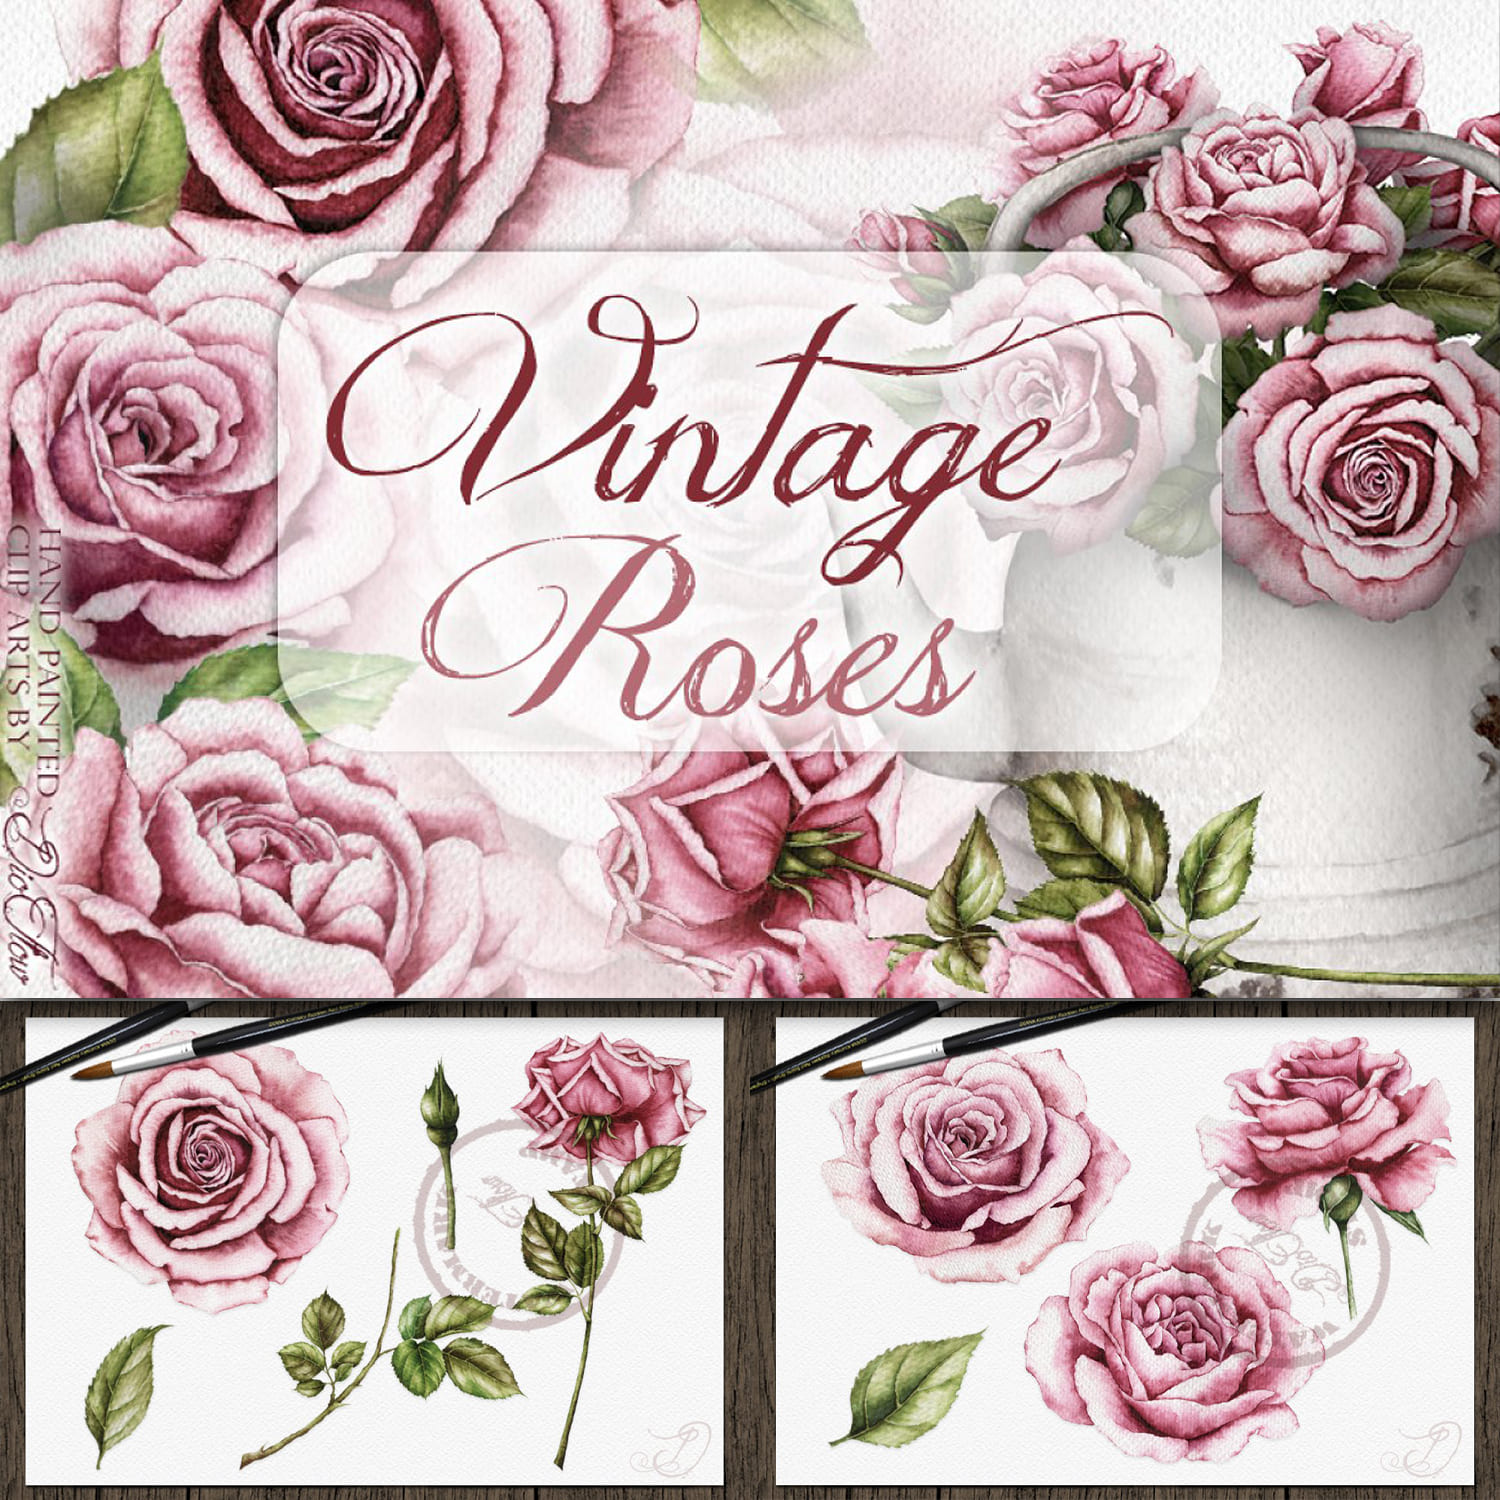 Vintage Roses Illustration cover.